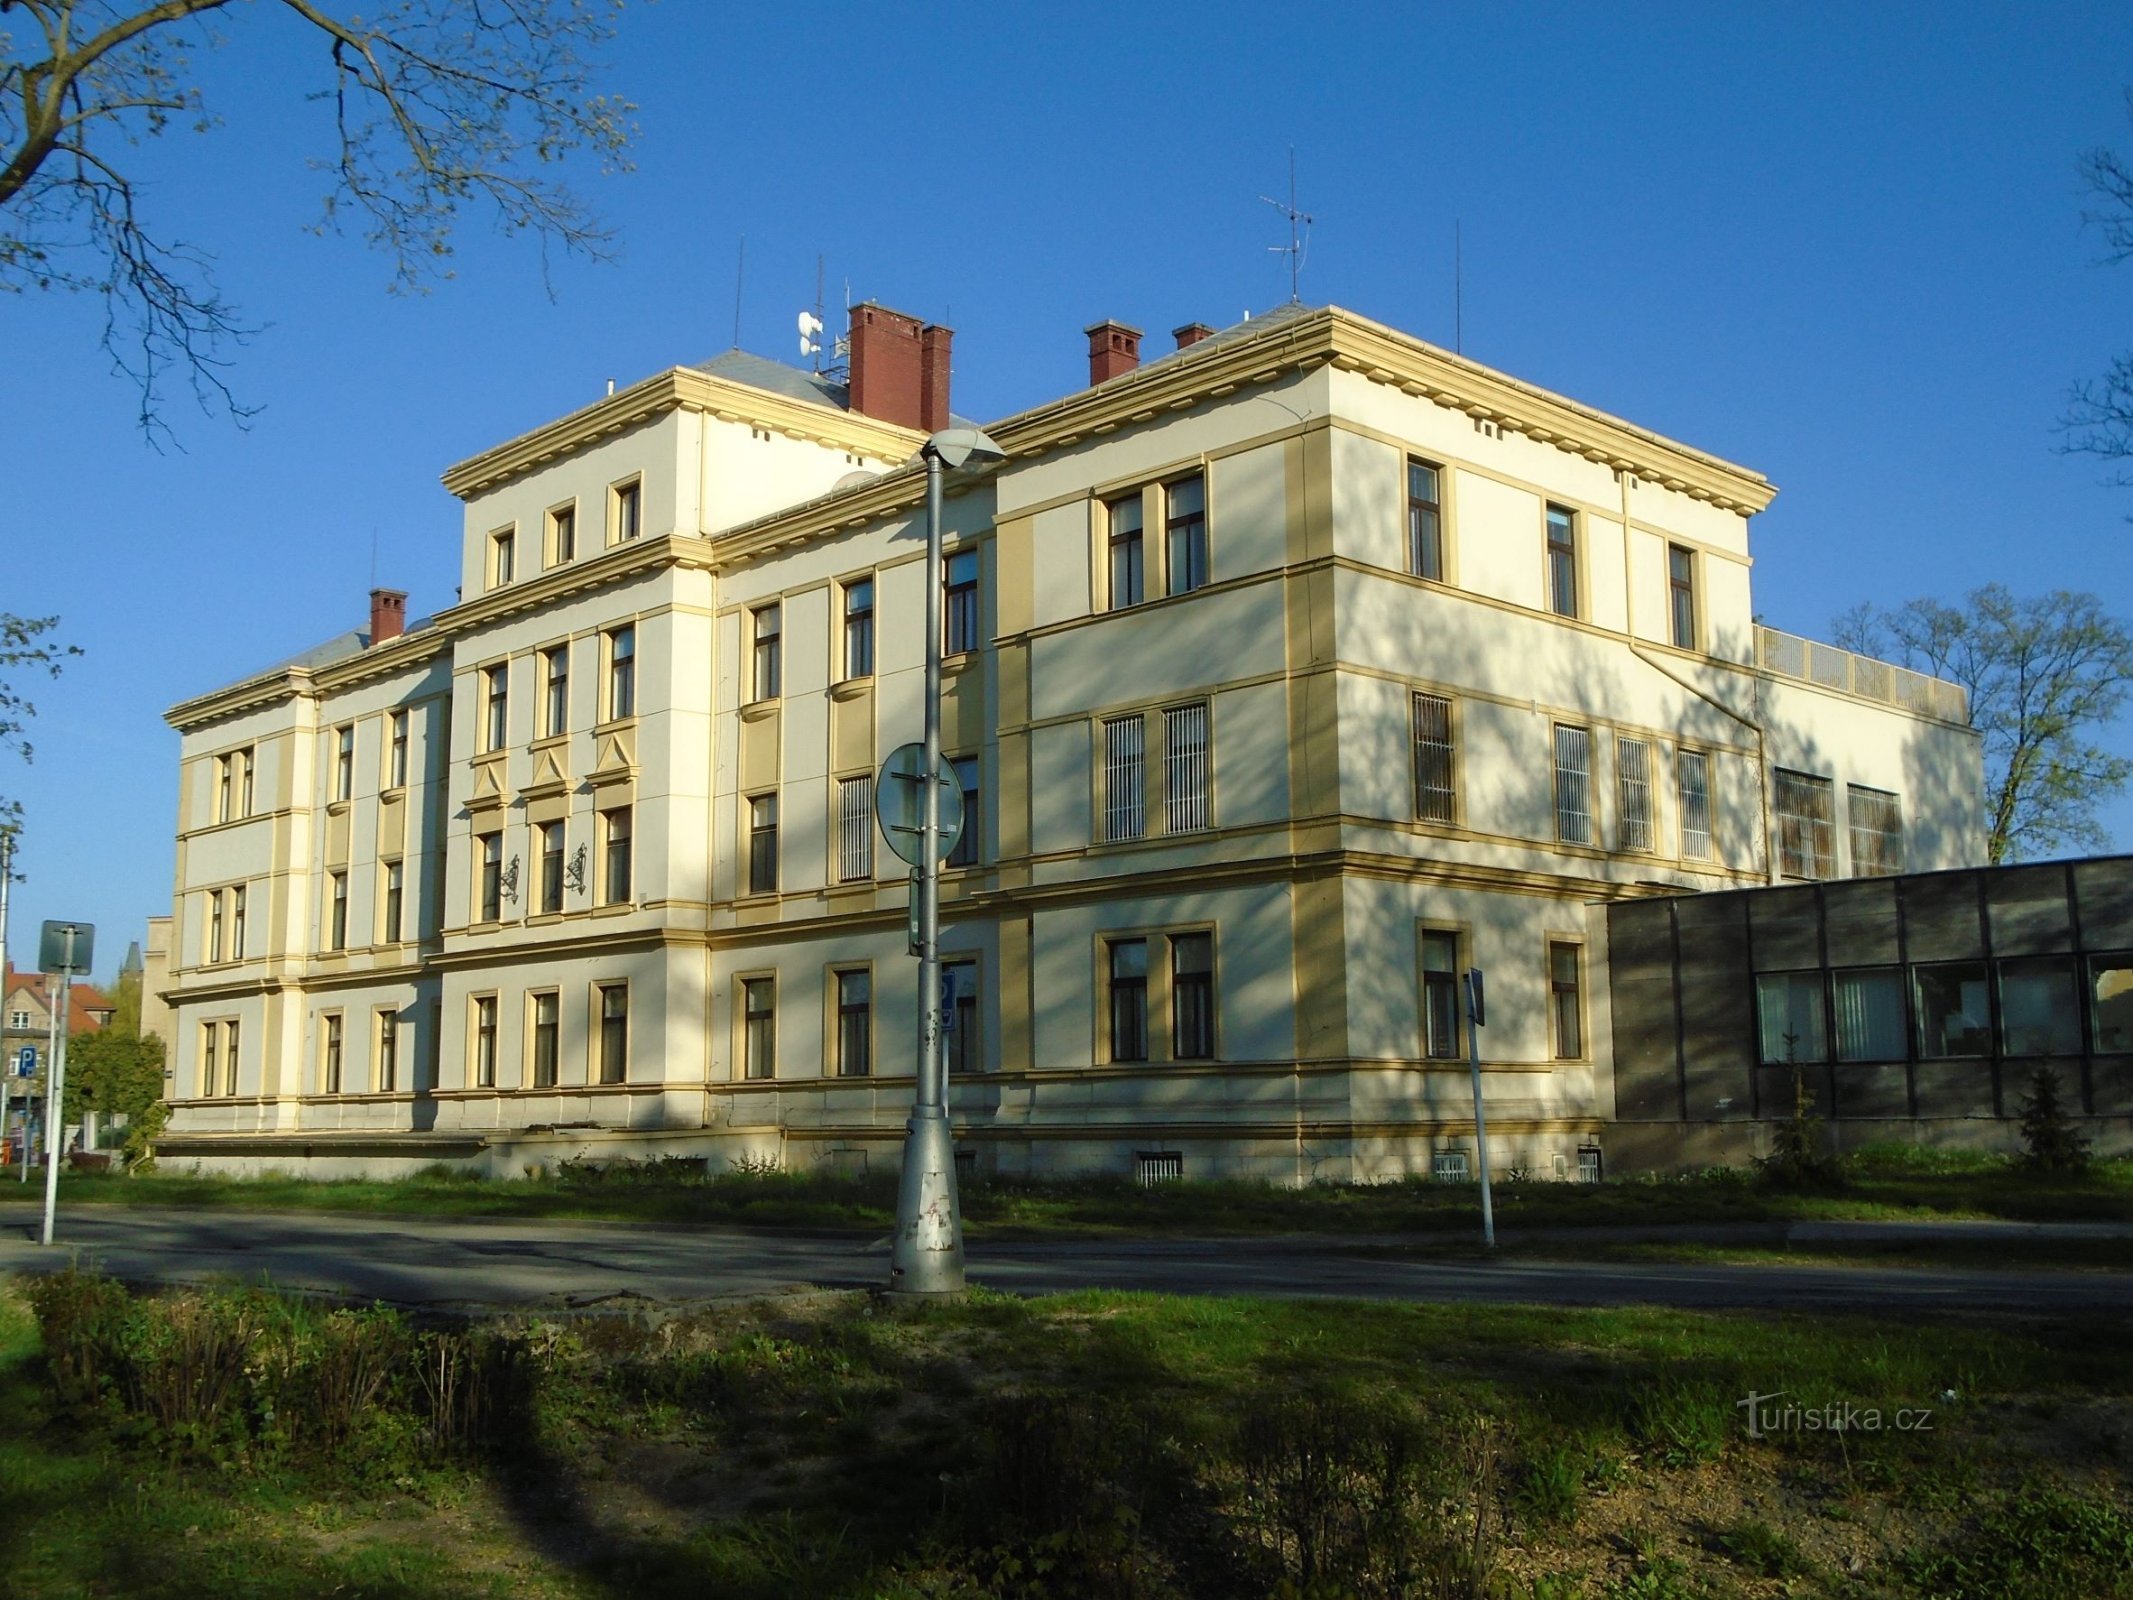 Stará nemocnice (Hradec Králové, 22.4.2019)